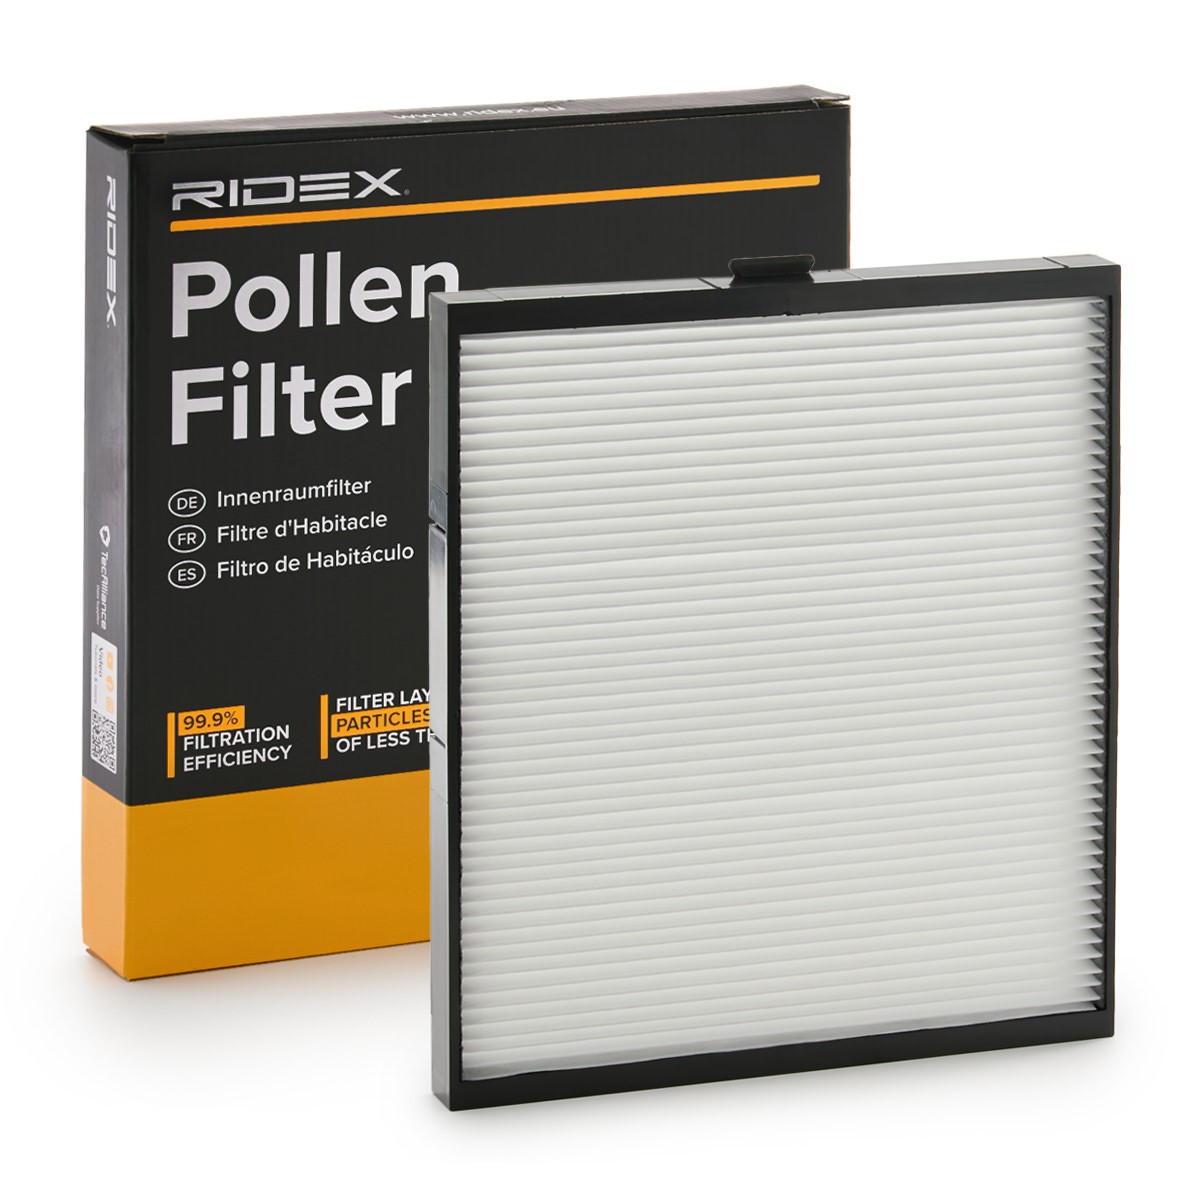 RIDEX 424I0165 Pollen filter Particulate Filter, 267 mm x 222 mm x 21 mm